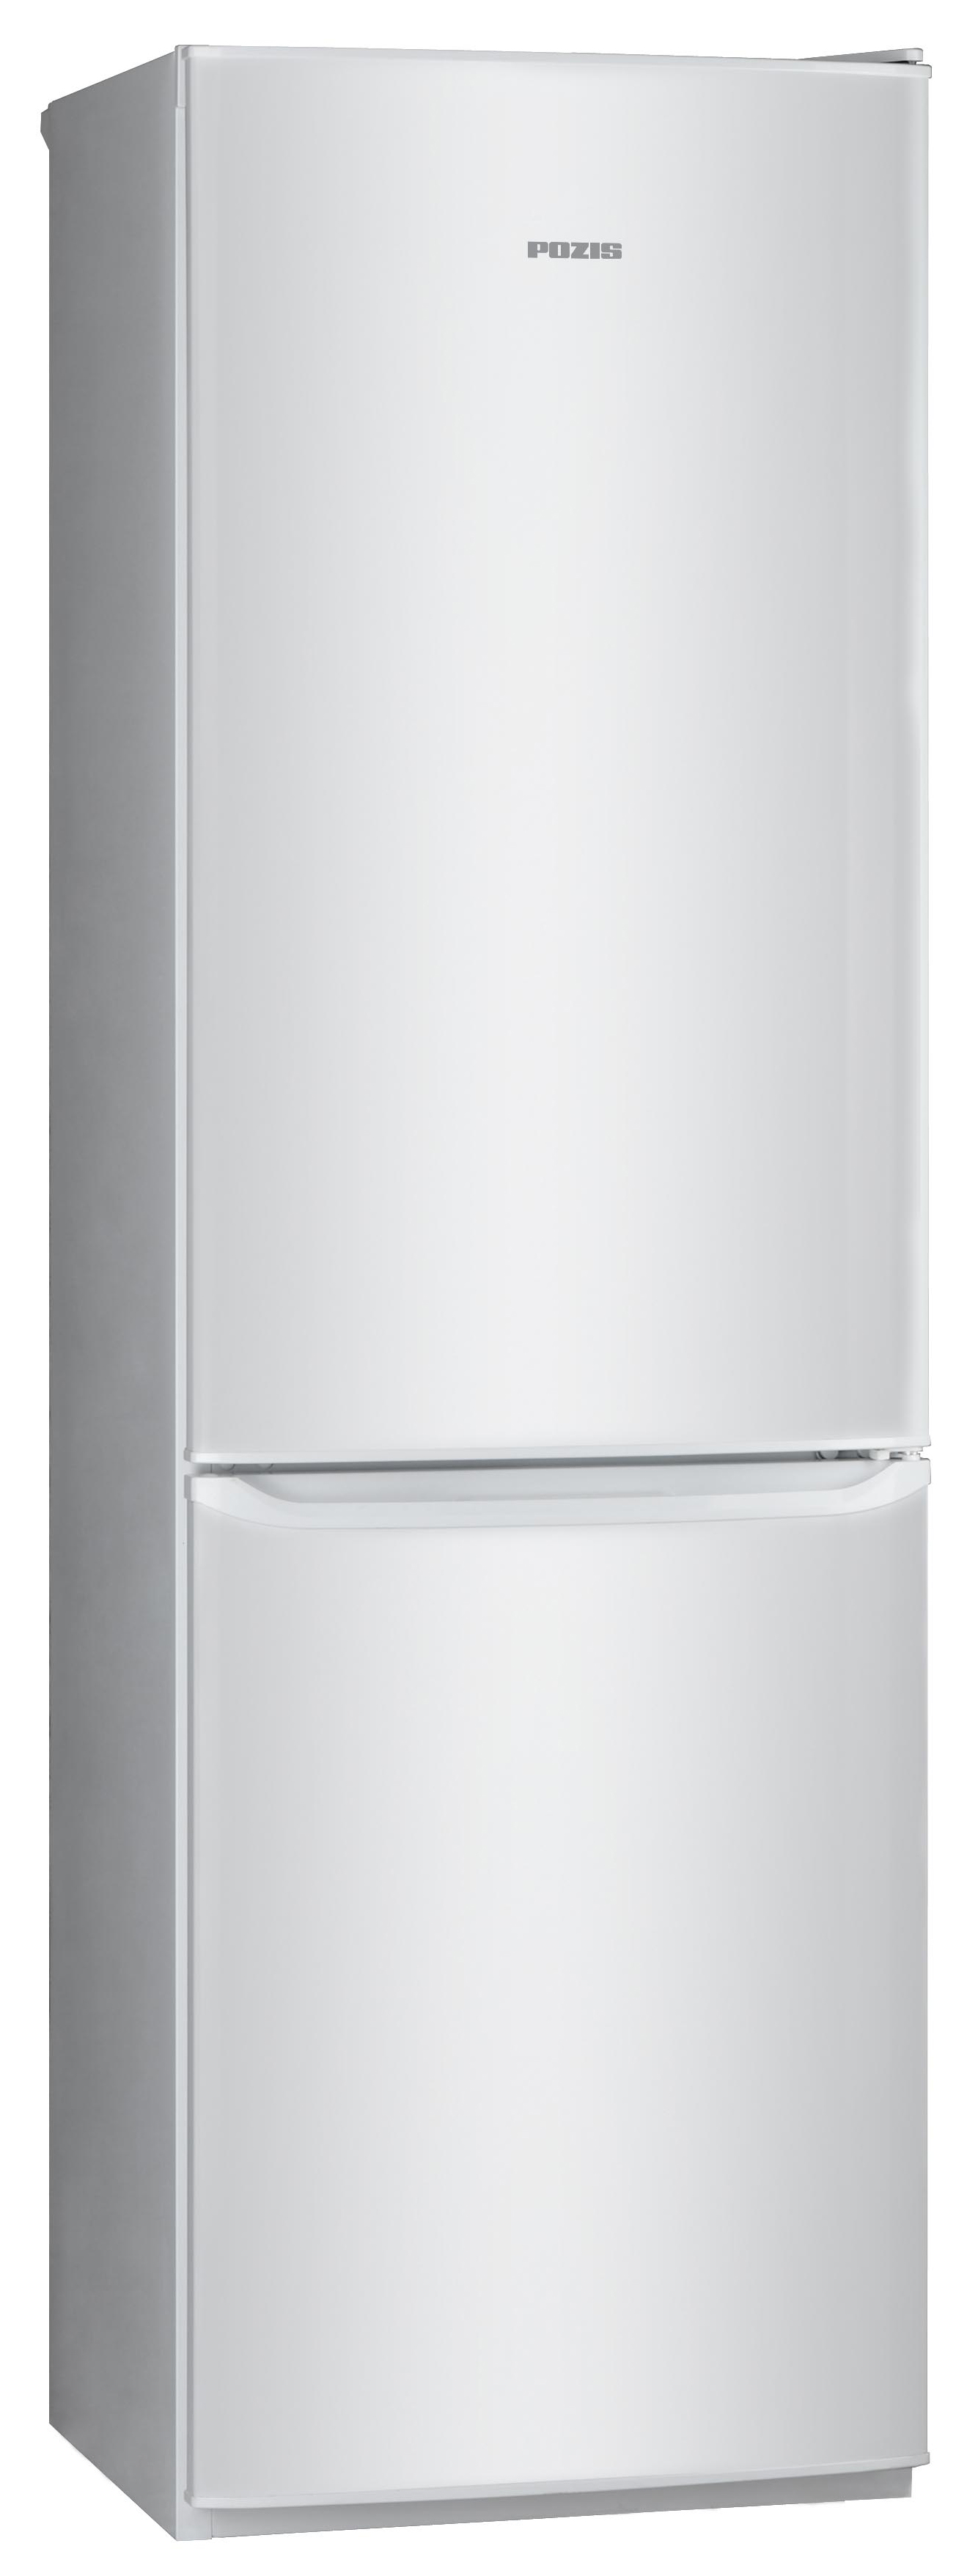 Холодильник POZIS RD-149 серебристый холодильник pozis